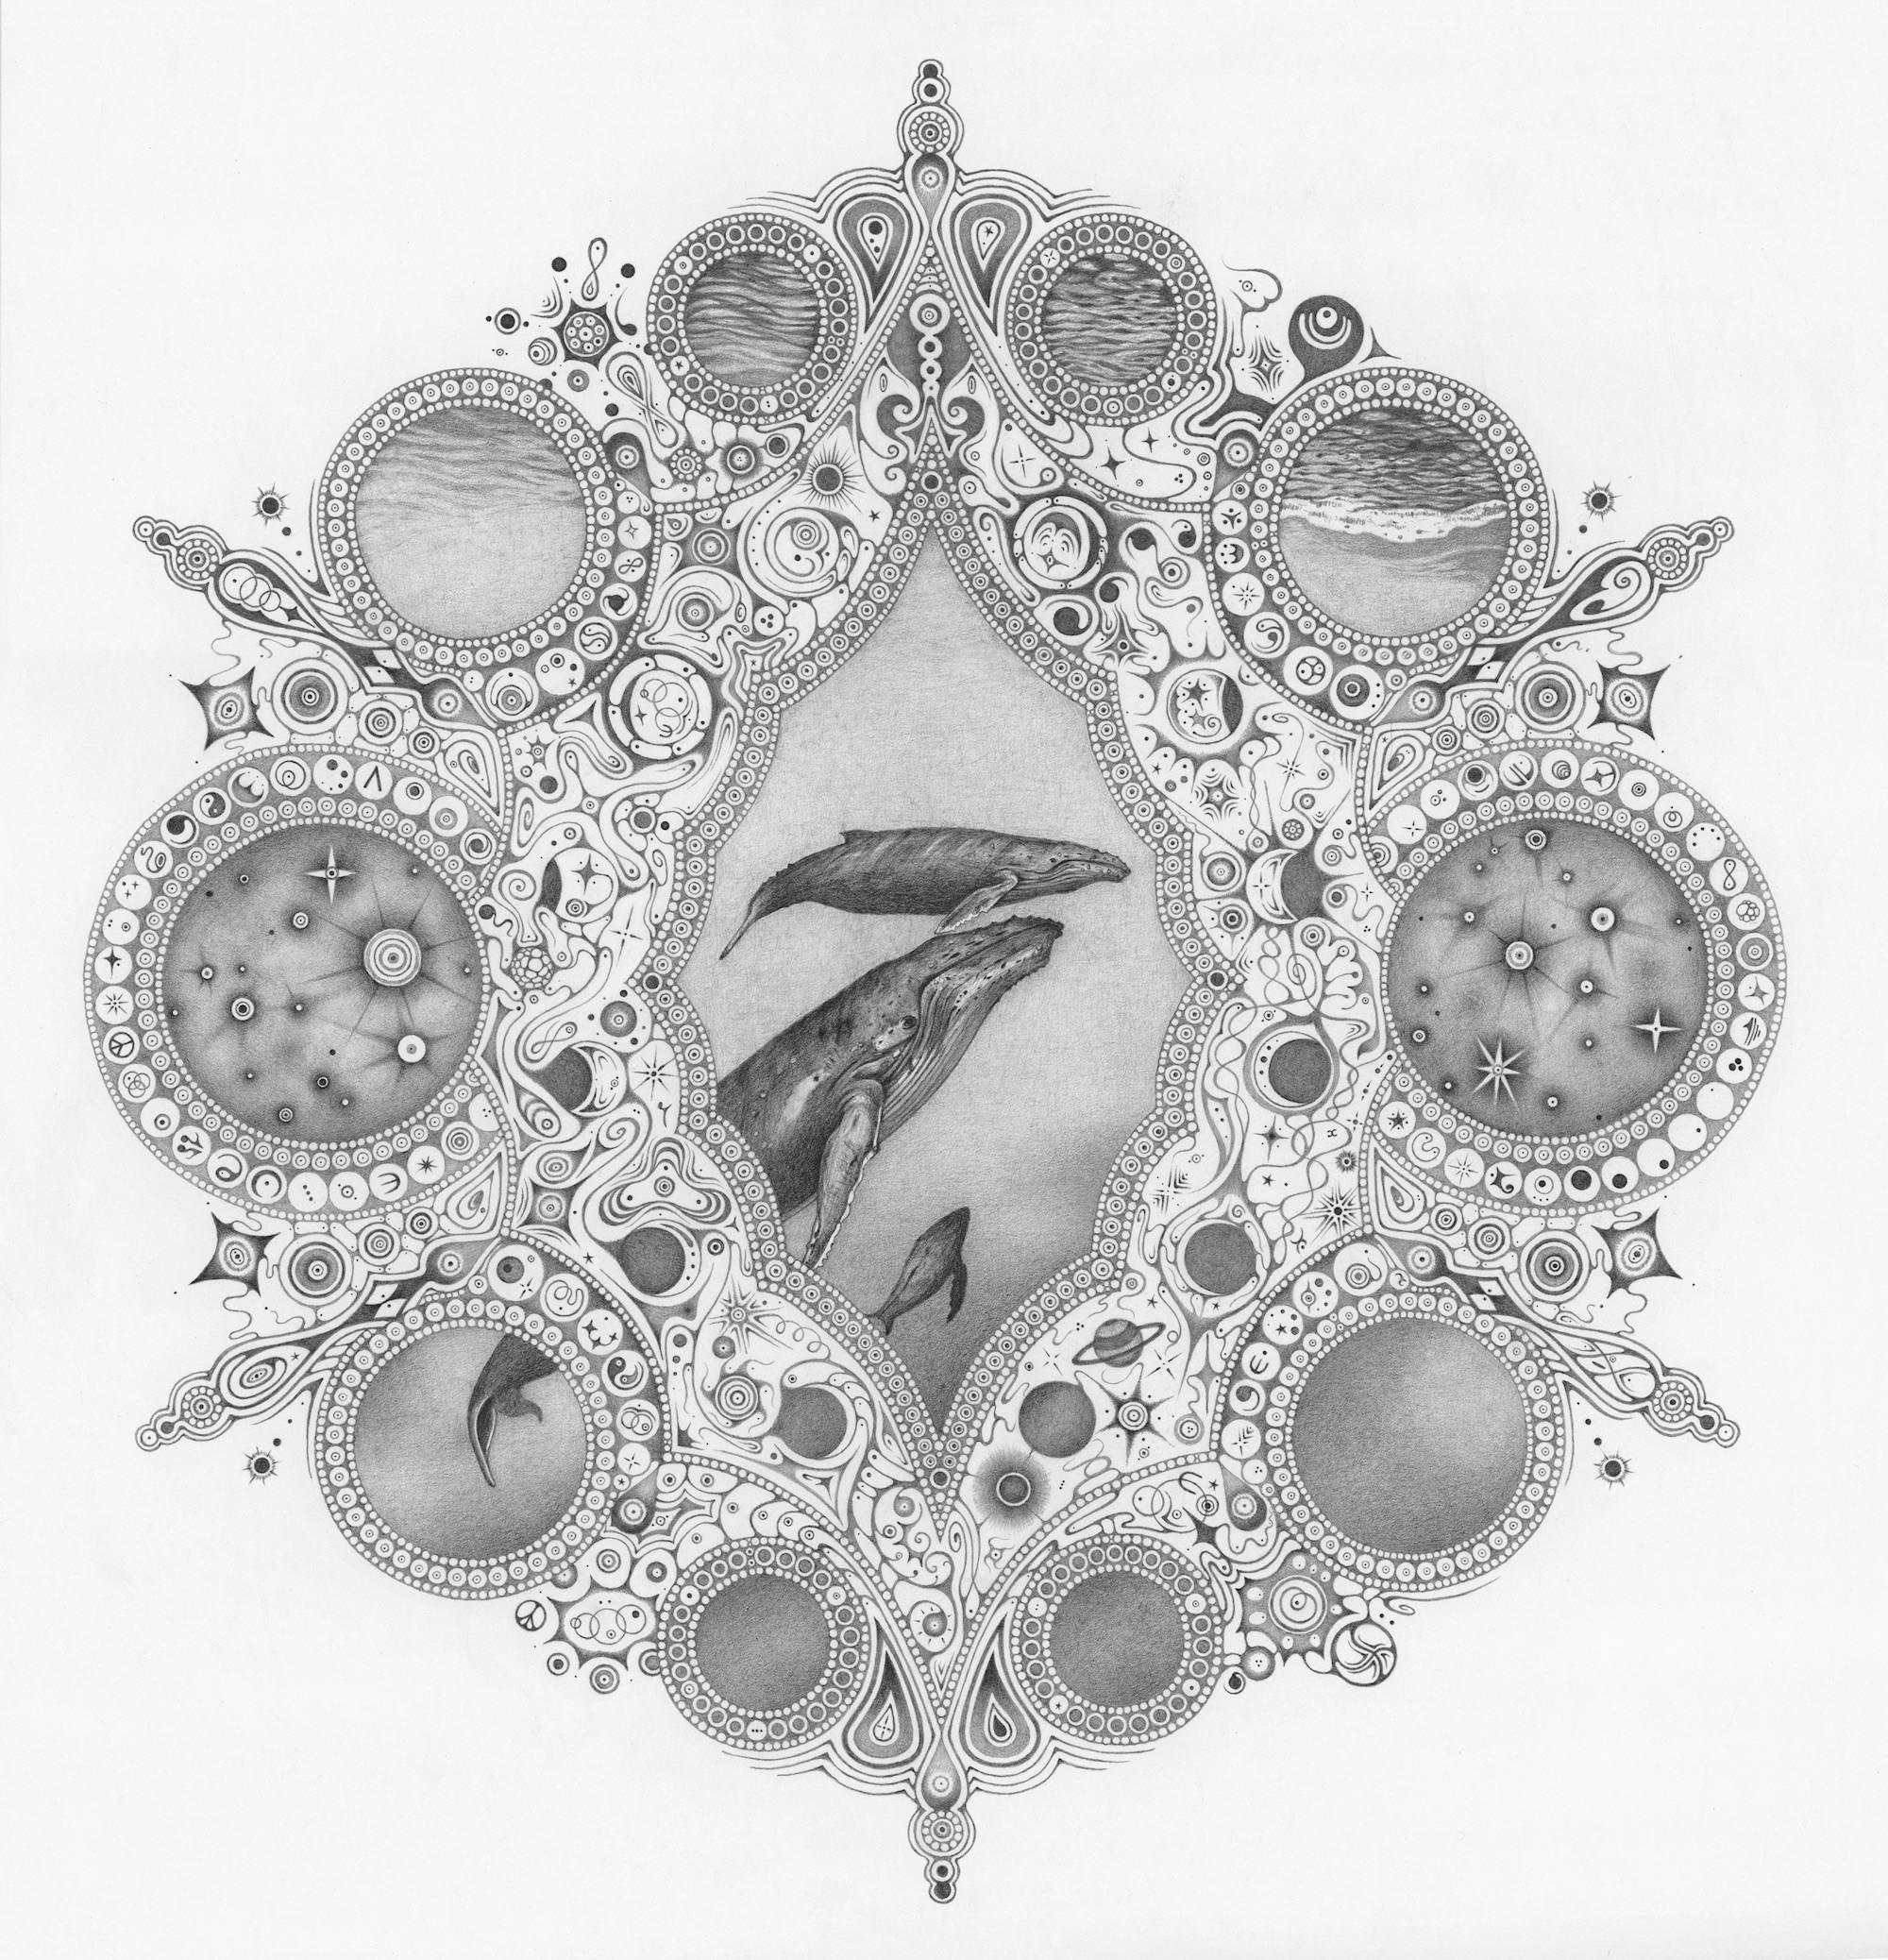 Michiyo Ihara Abstract Drawing - Snowflakes 148 Mother, Whales, Seascape, Planets, Ocean Mandala Pencil Drawing